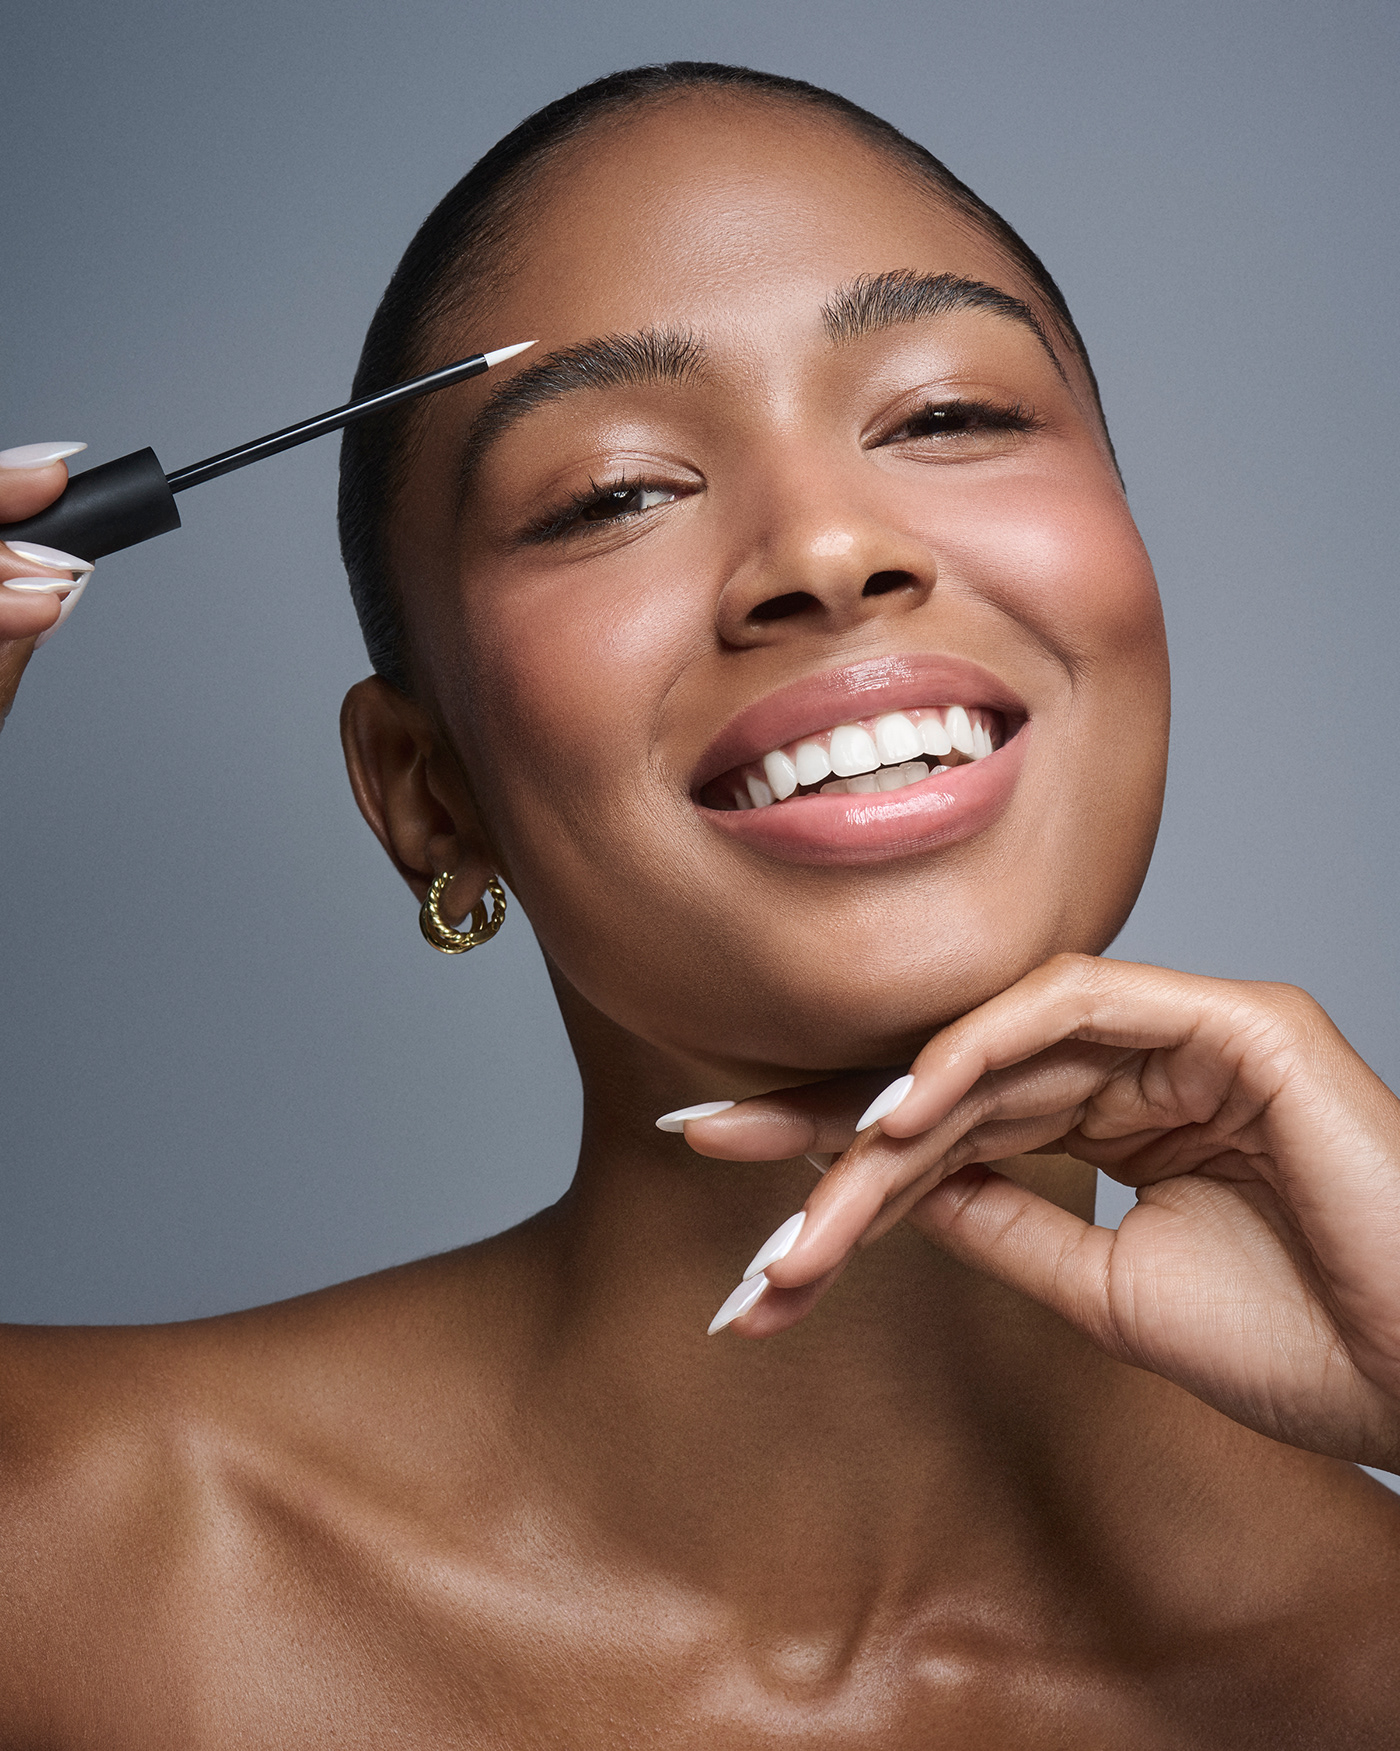 skin portrait woman makeup beauty closeup retouch retoucher fashion photography Commercial Photography